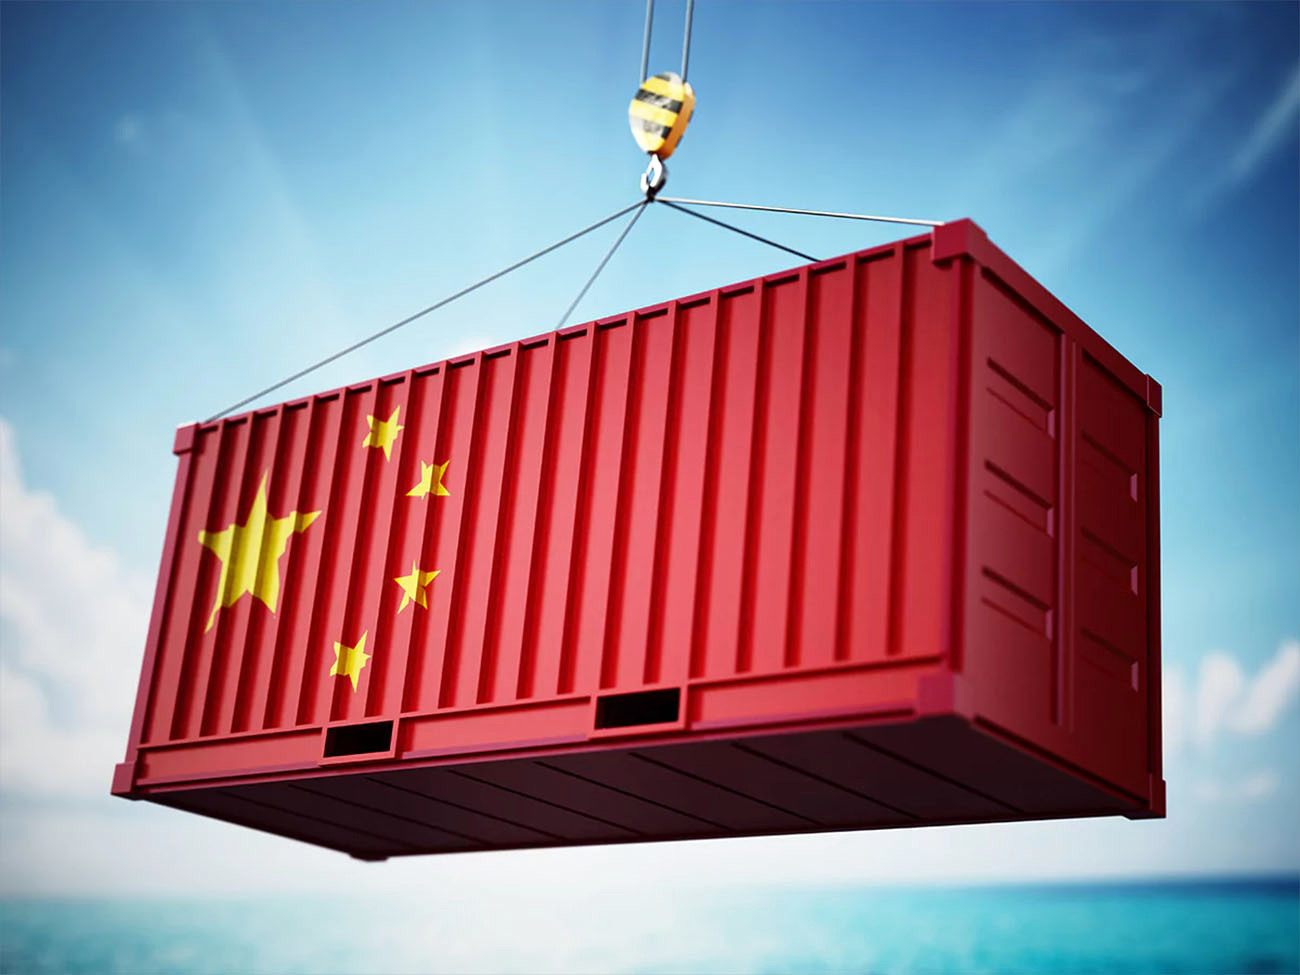 %8.6 نمو صادرات الصين في يونيو رغم توترات التجارة